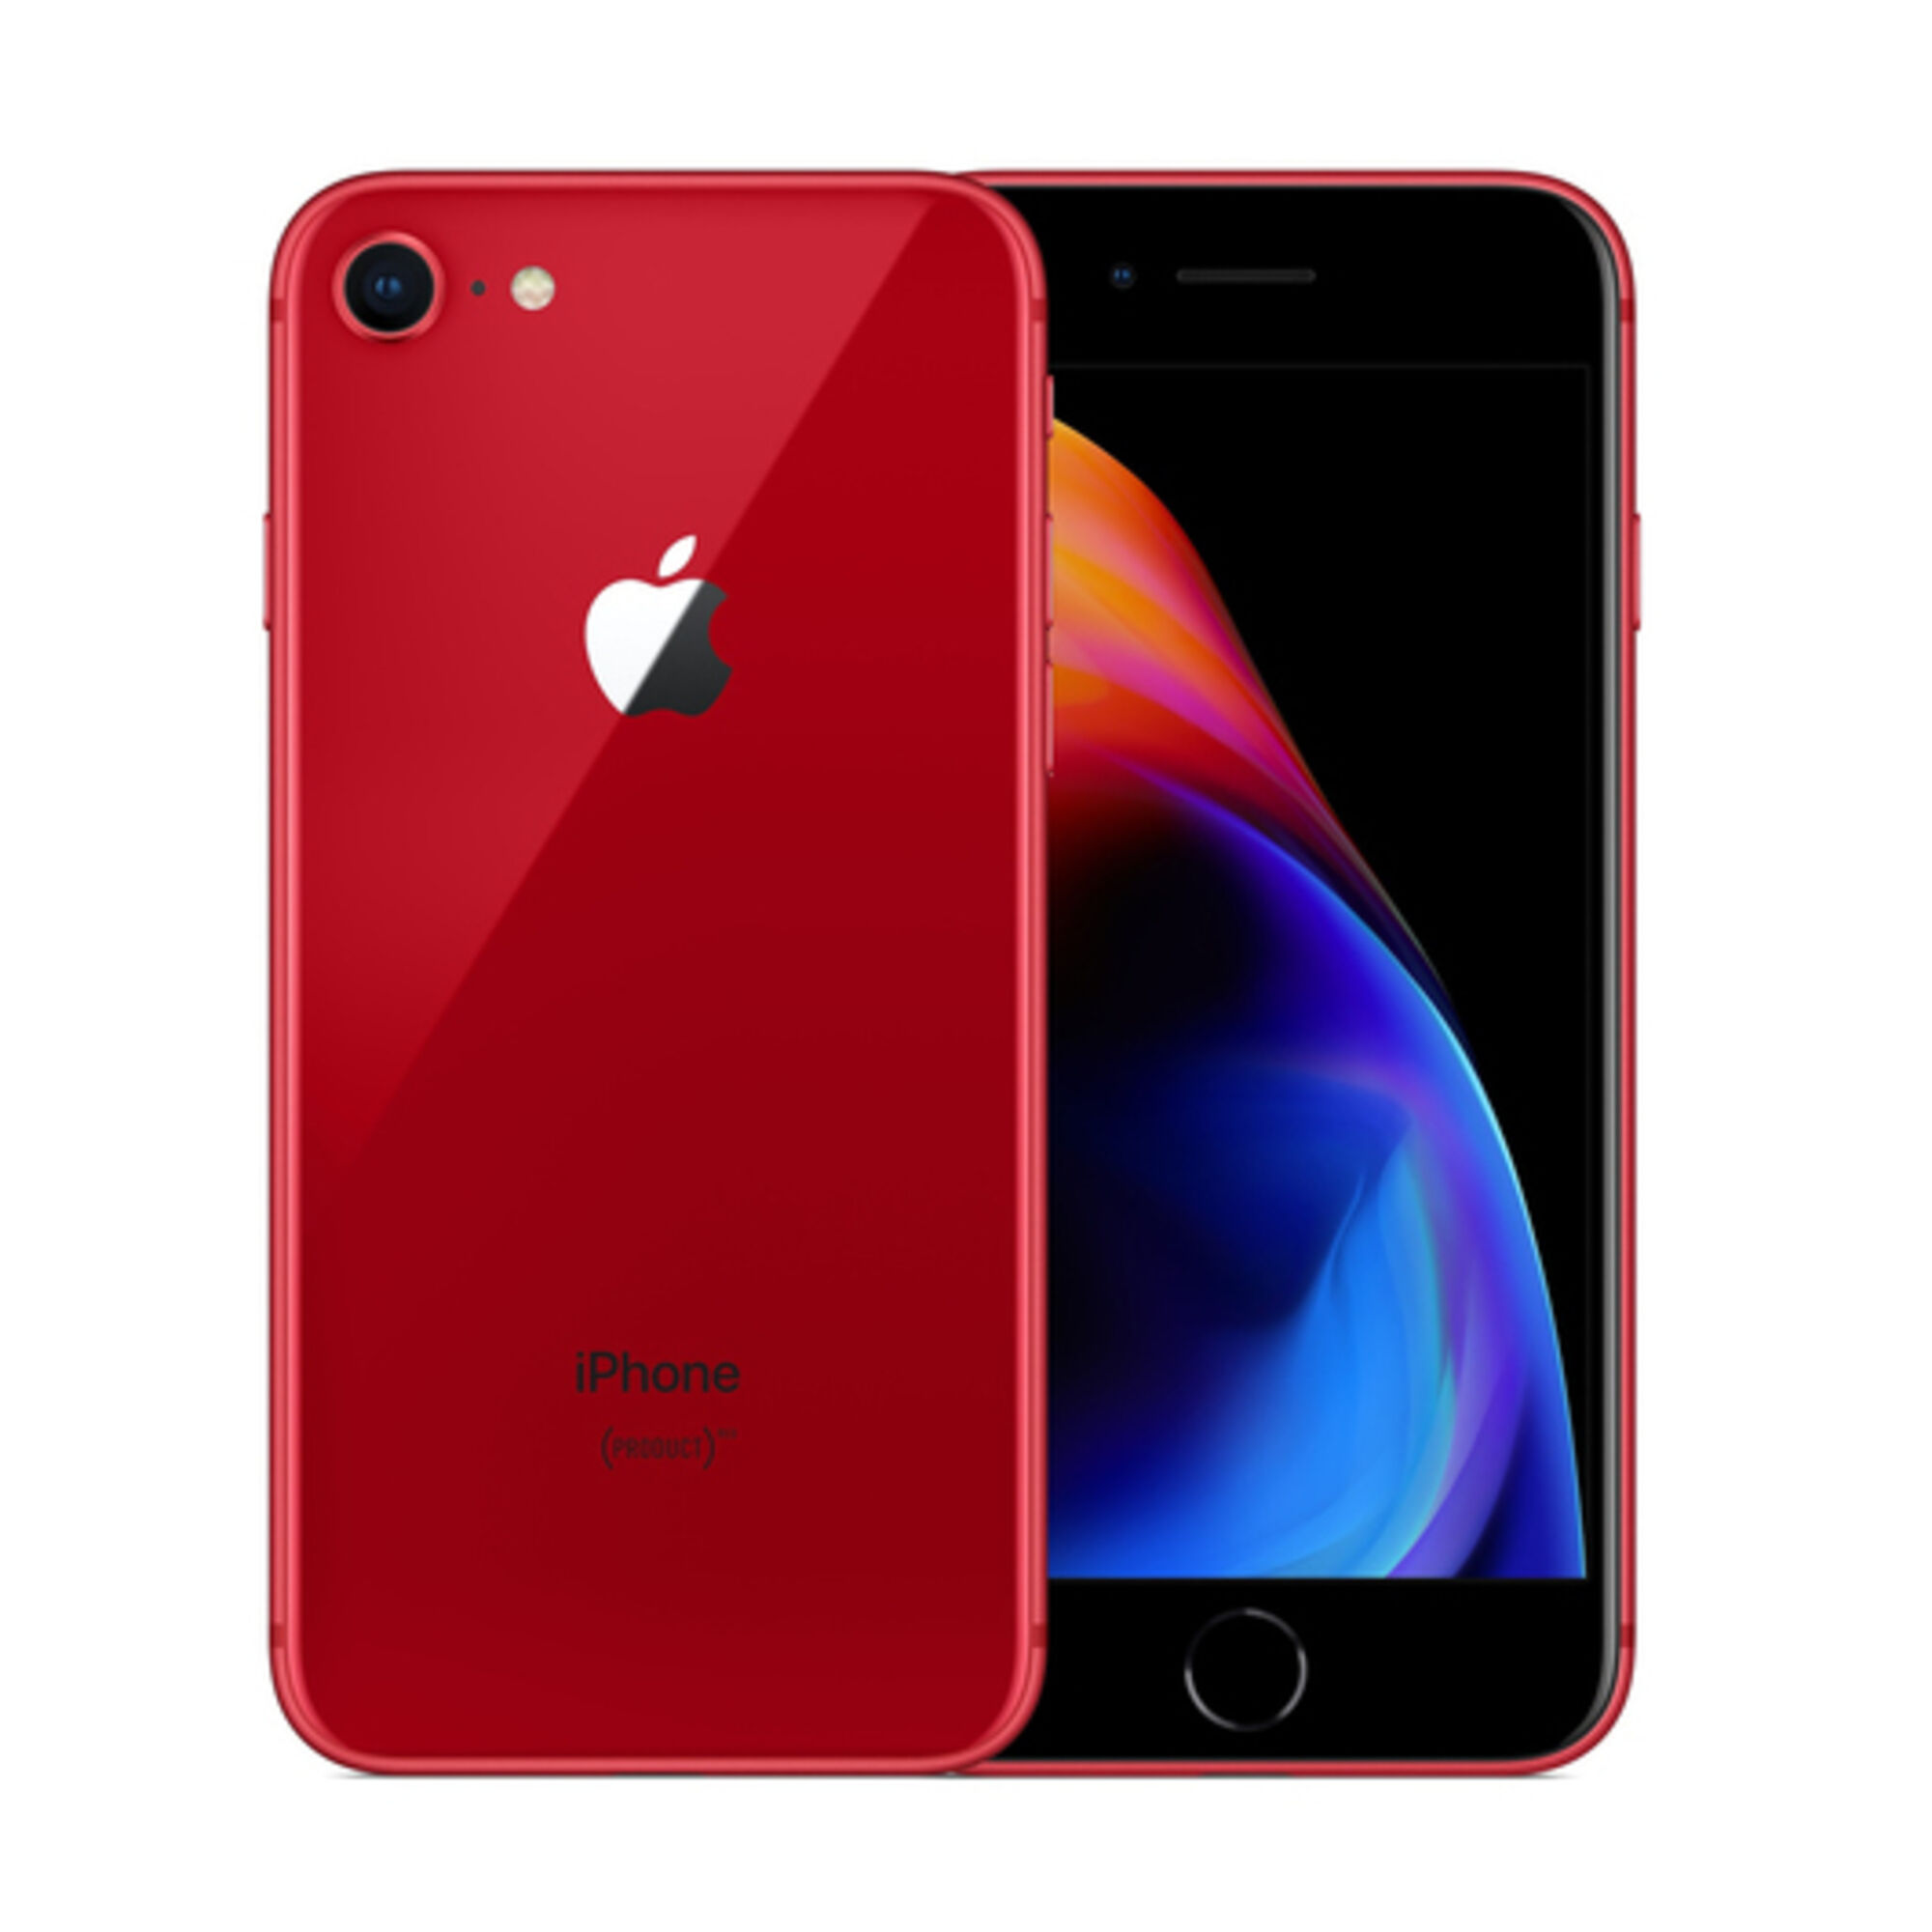 Apple iPhone 8 64 Go, (PRODUCT)Red, débloqué - Reconditionné